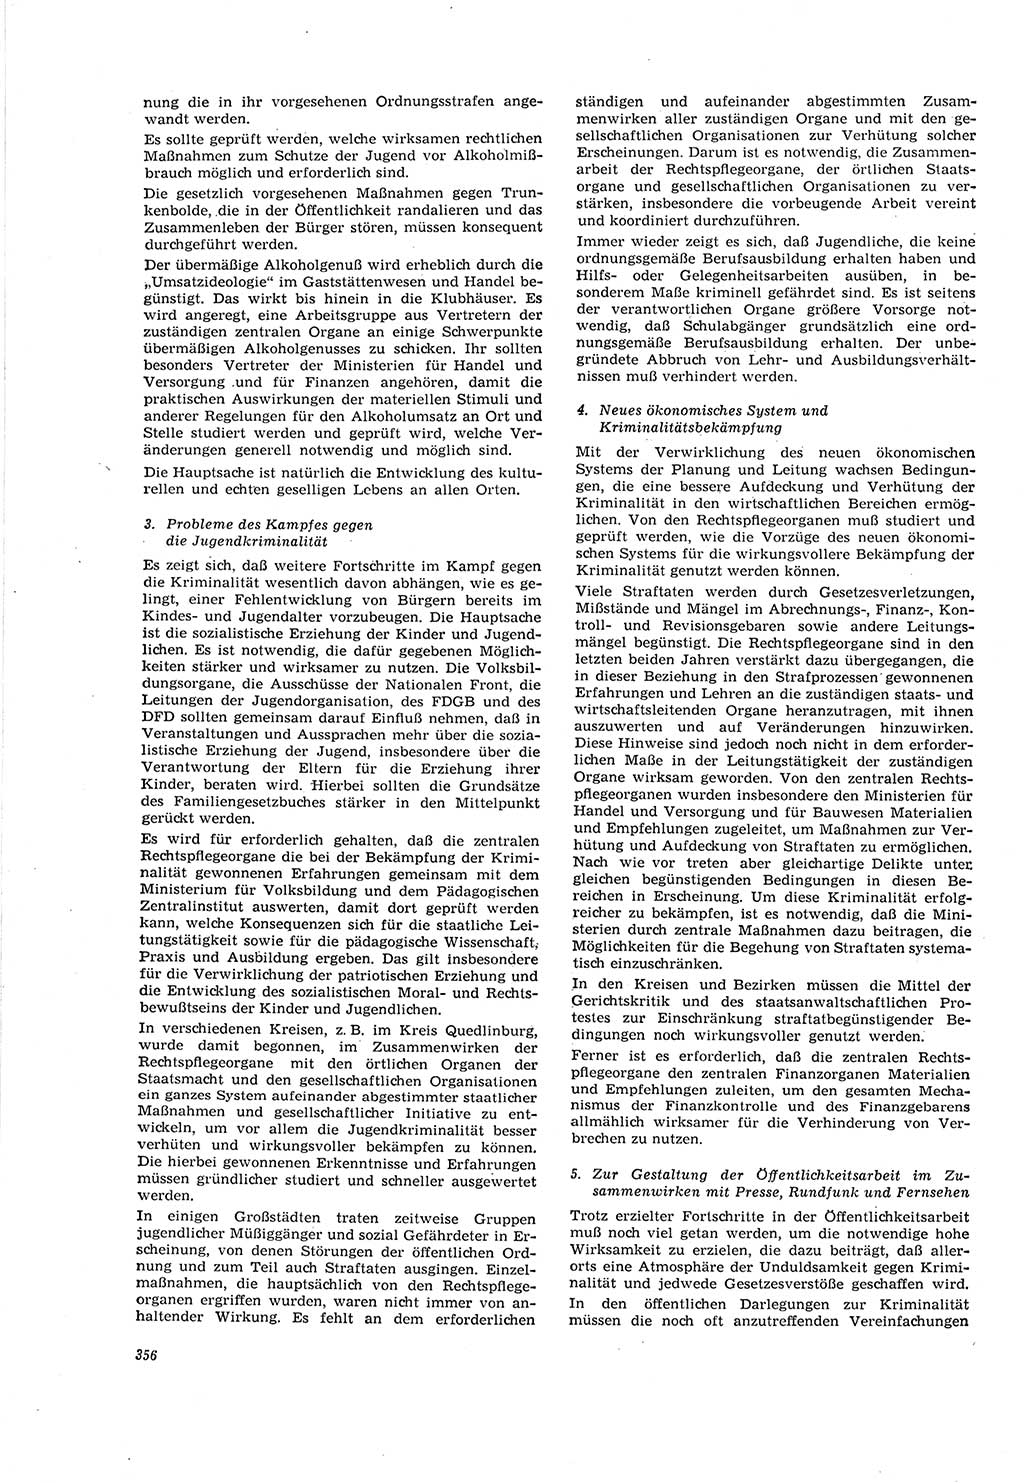 Neue Justiz (NJ), Zeitschrift für Recht und Rechtswissenschaft [Deutsche Demokratische Republik (DDR)], 20. Jahrgang 1966, Seite 356 (NJ DDR 1966, S. 356)